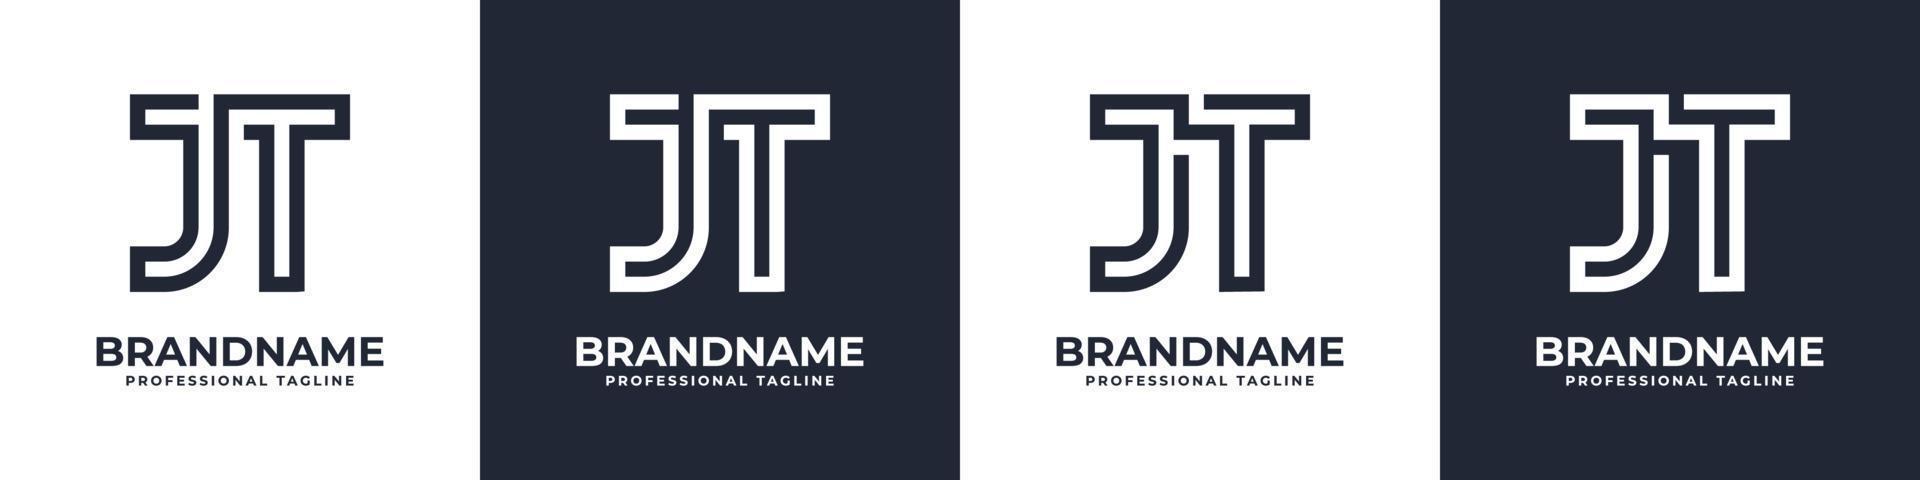 logotipo de monograma simple jt, adecuado para cualquier negocio con jt o tj inicial. vector